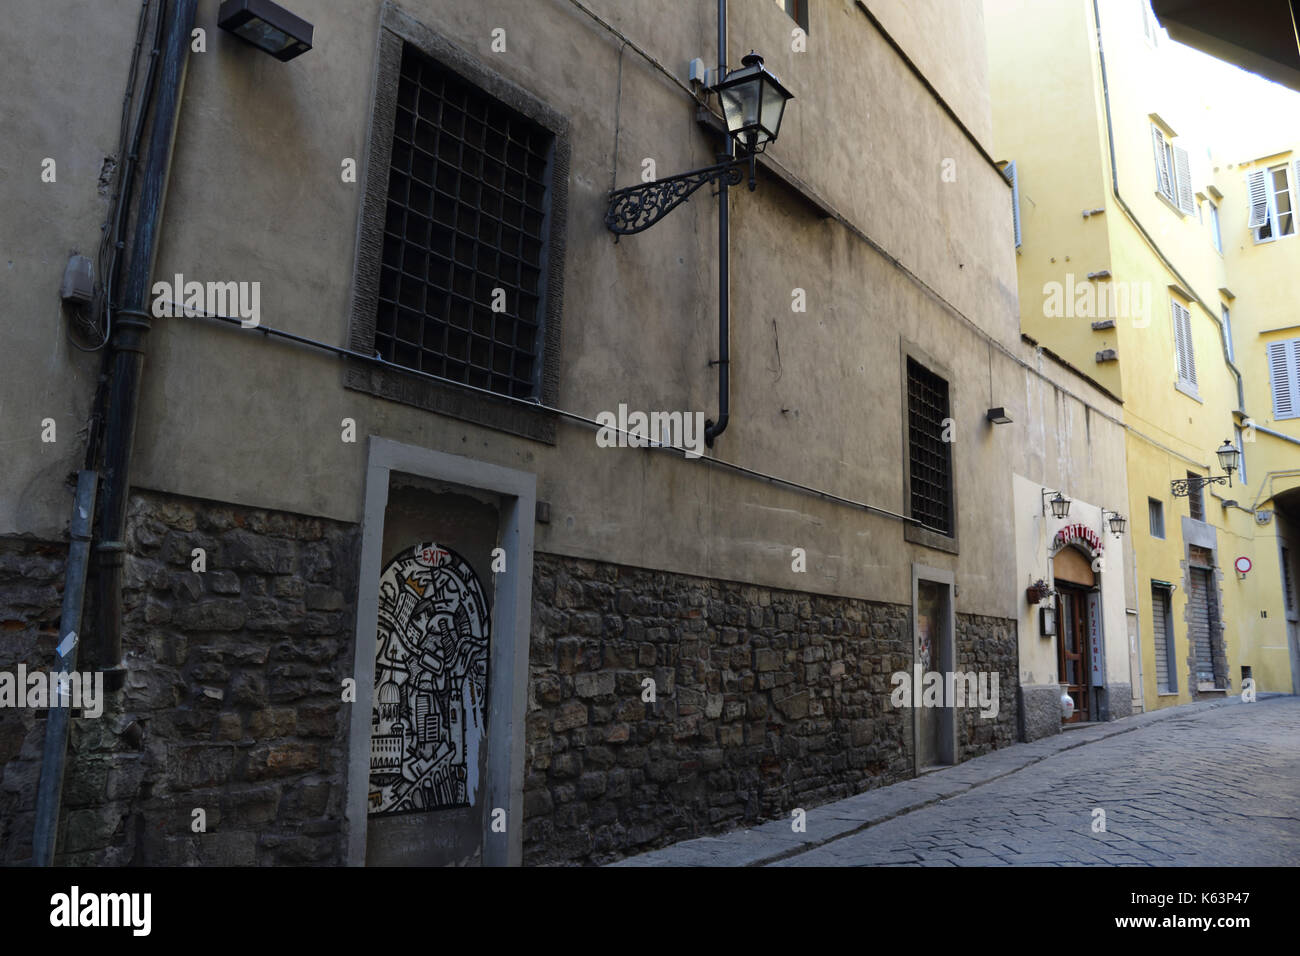 Schwarze und weiße Street Art in einer Seitenstraße. Florenz, Italien. Stockfoto